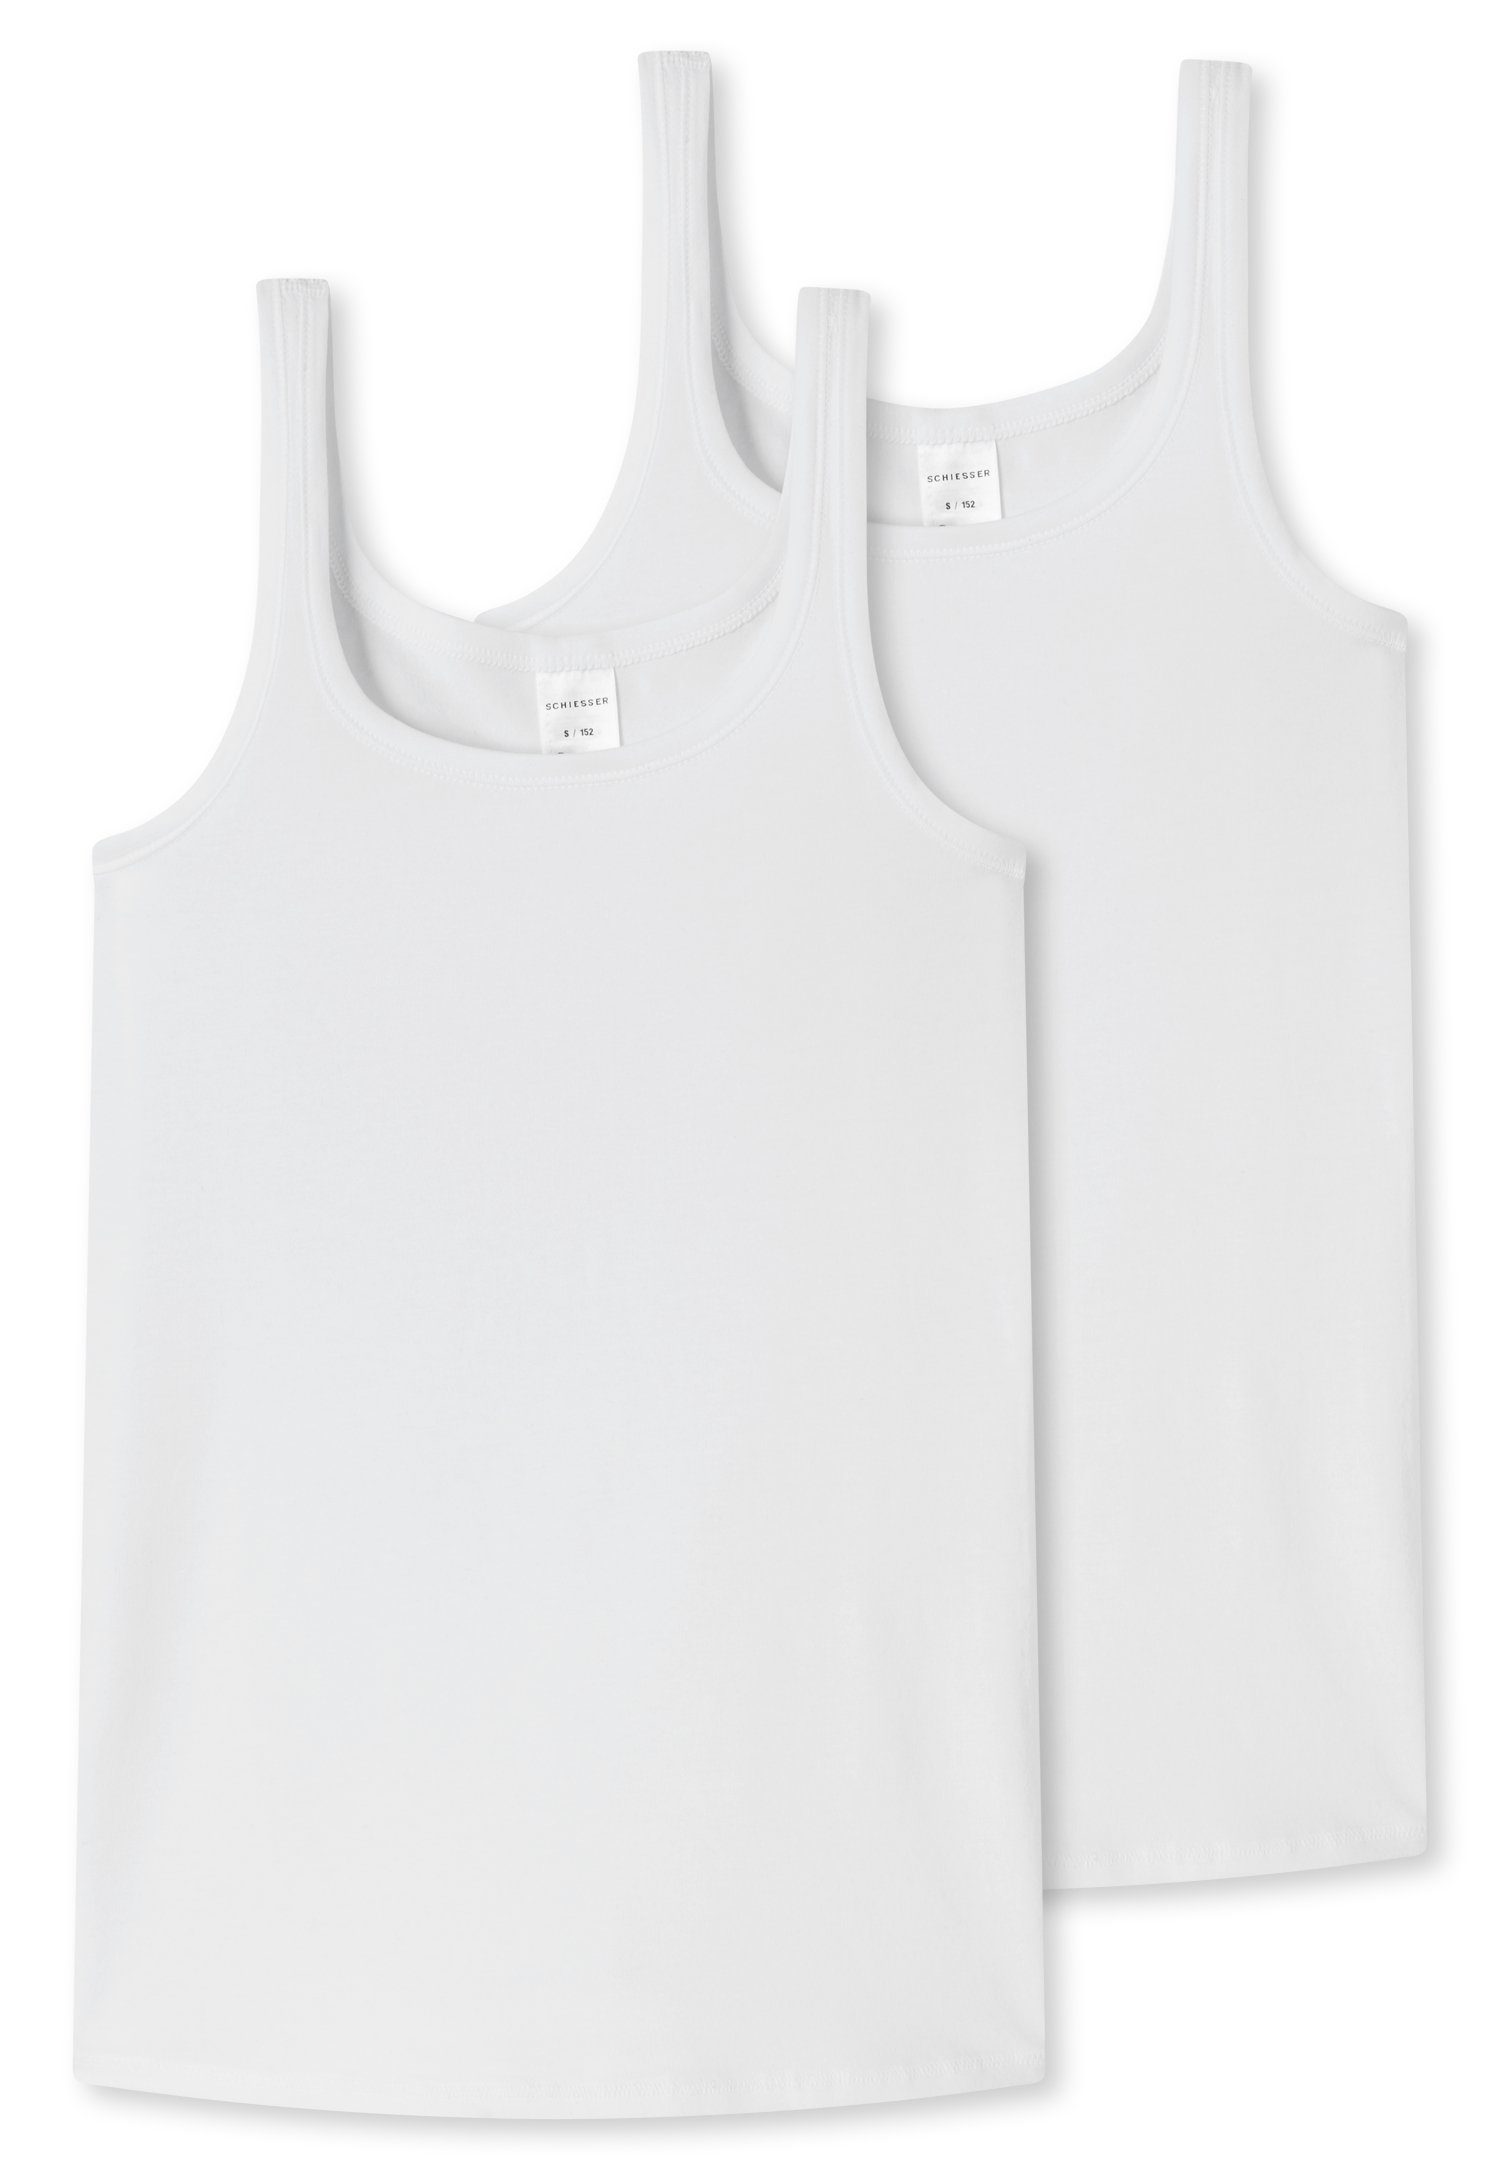 Unterhemd (2er-Pack) Schiesser mit weiß Trägern breiten